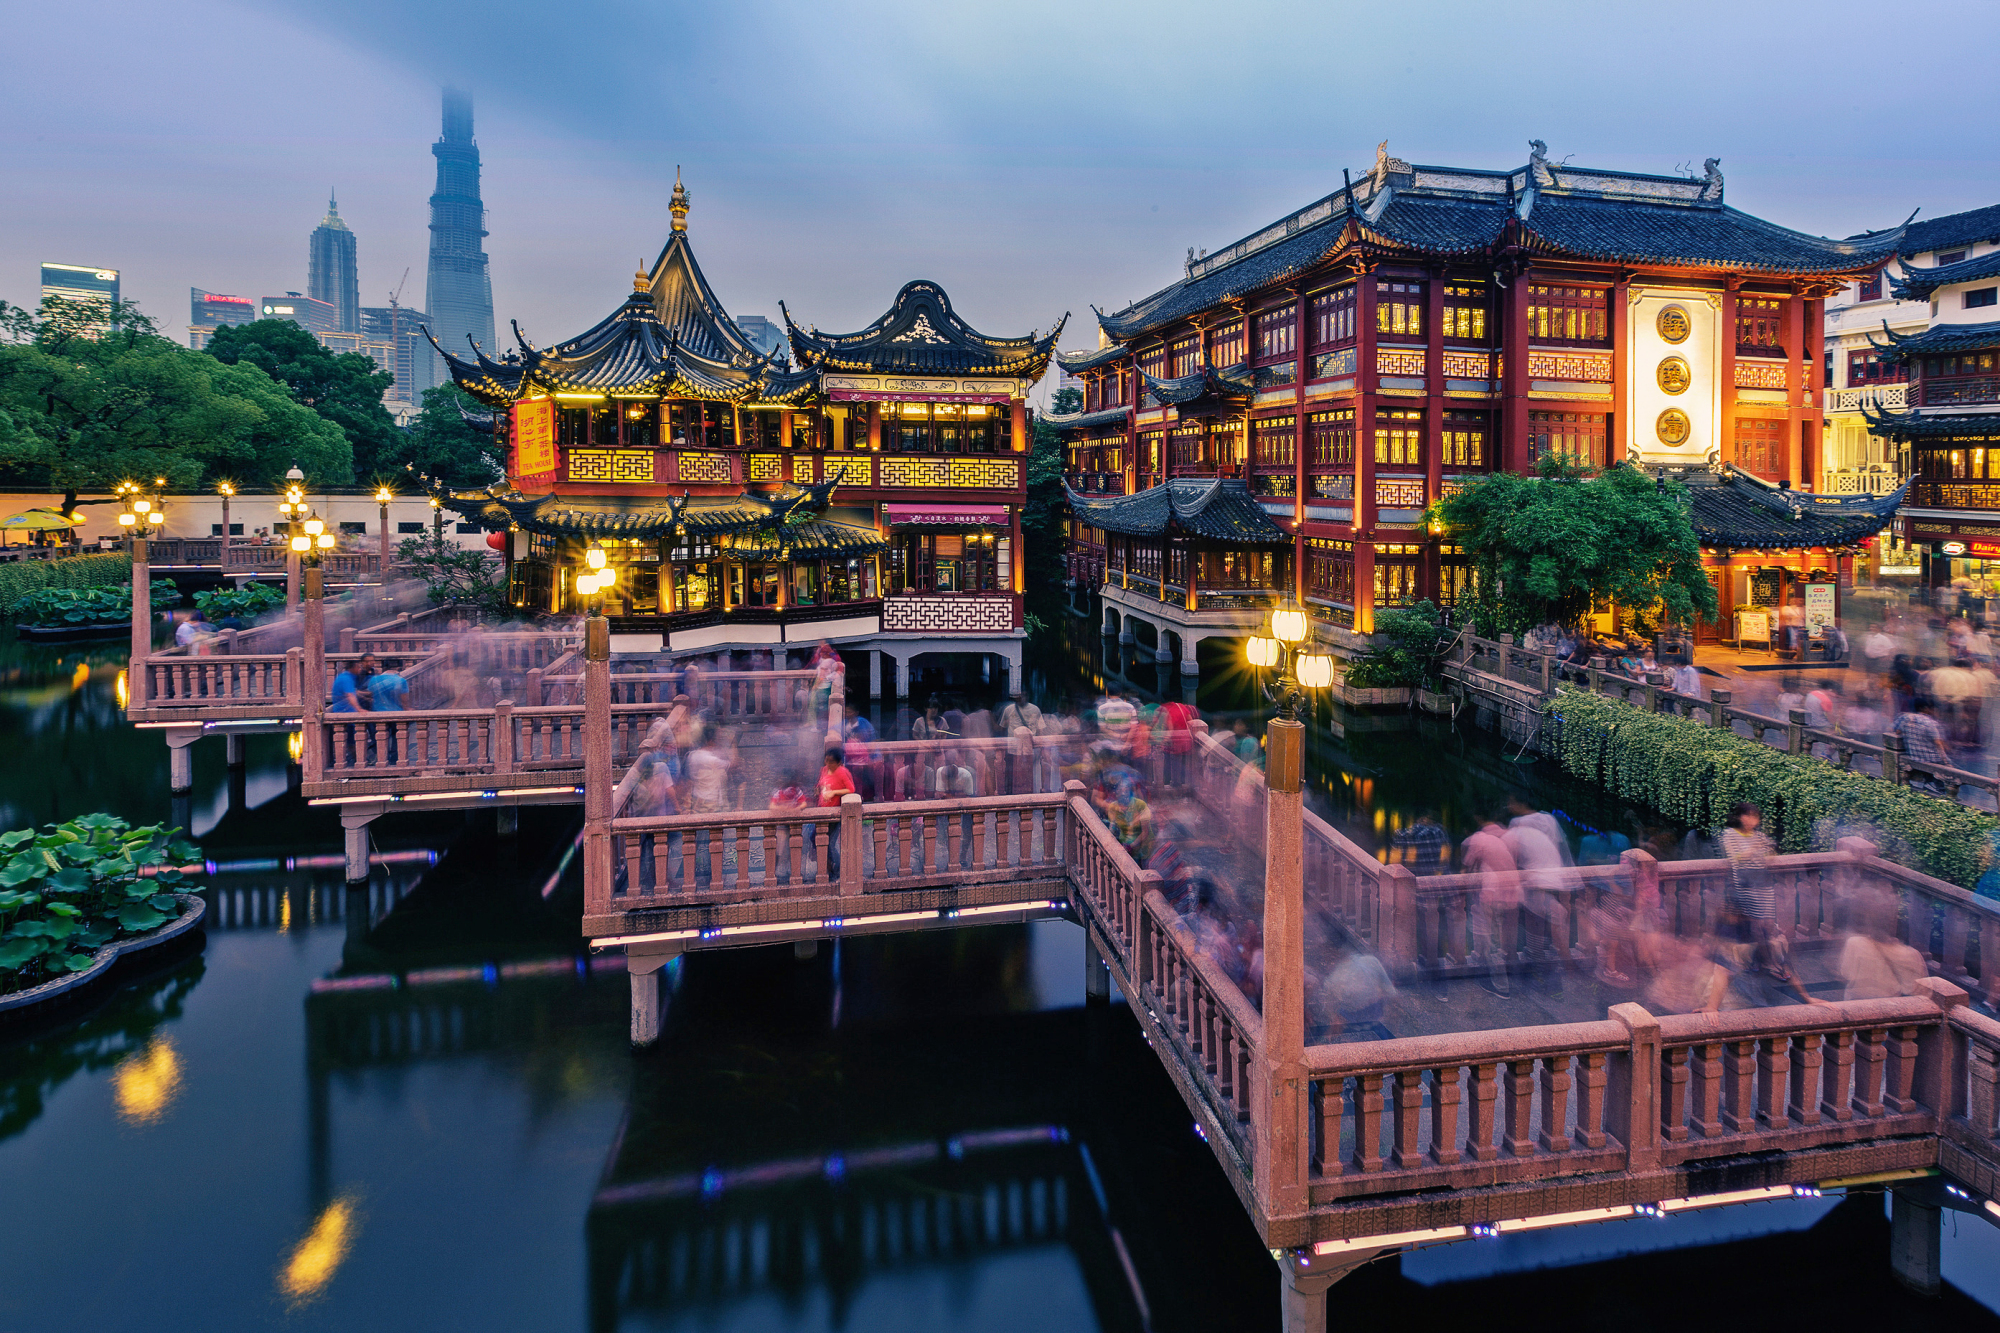 涨知识了!上海最新top10景点排行榜:第一名竟然不是迪士尼?